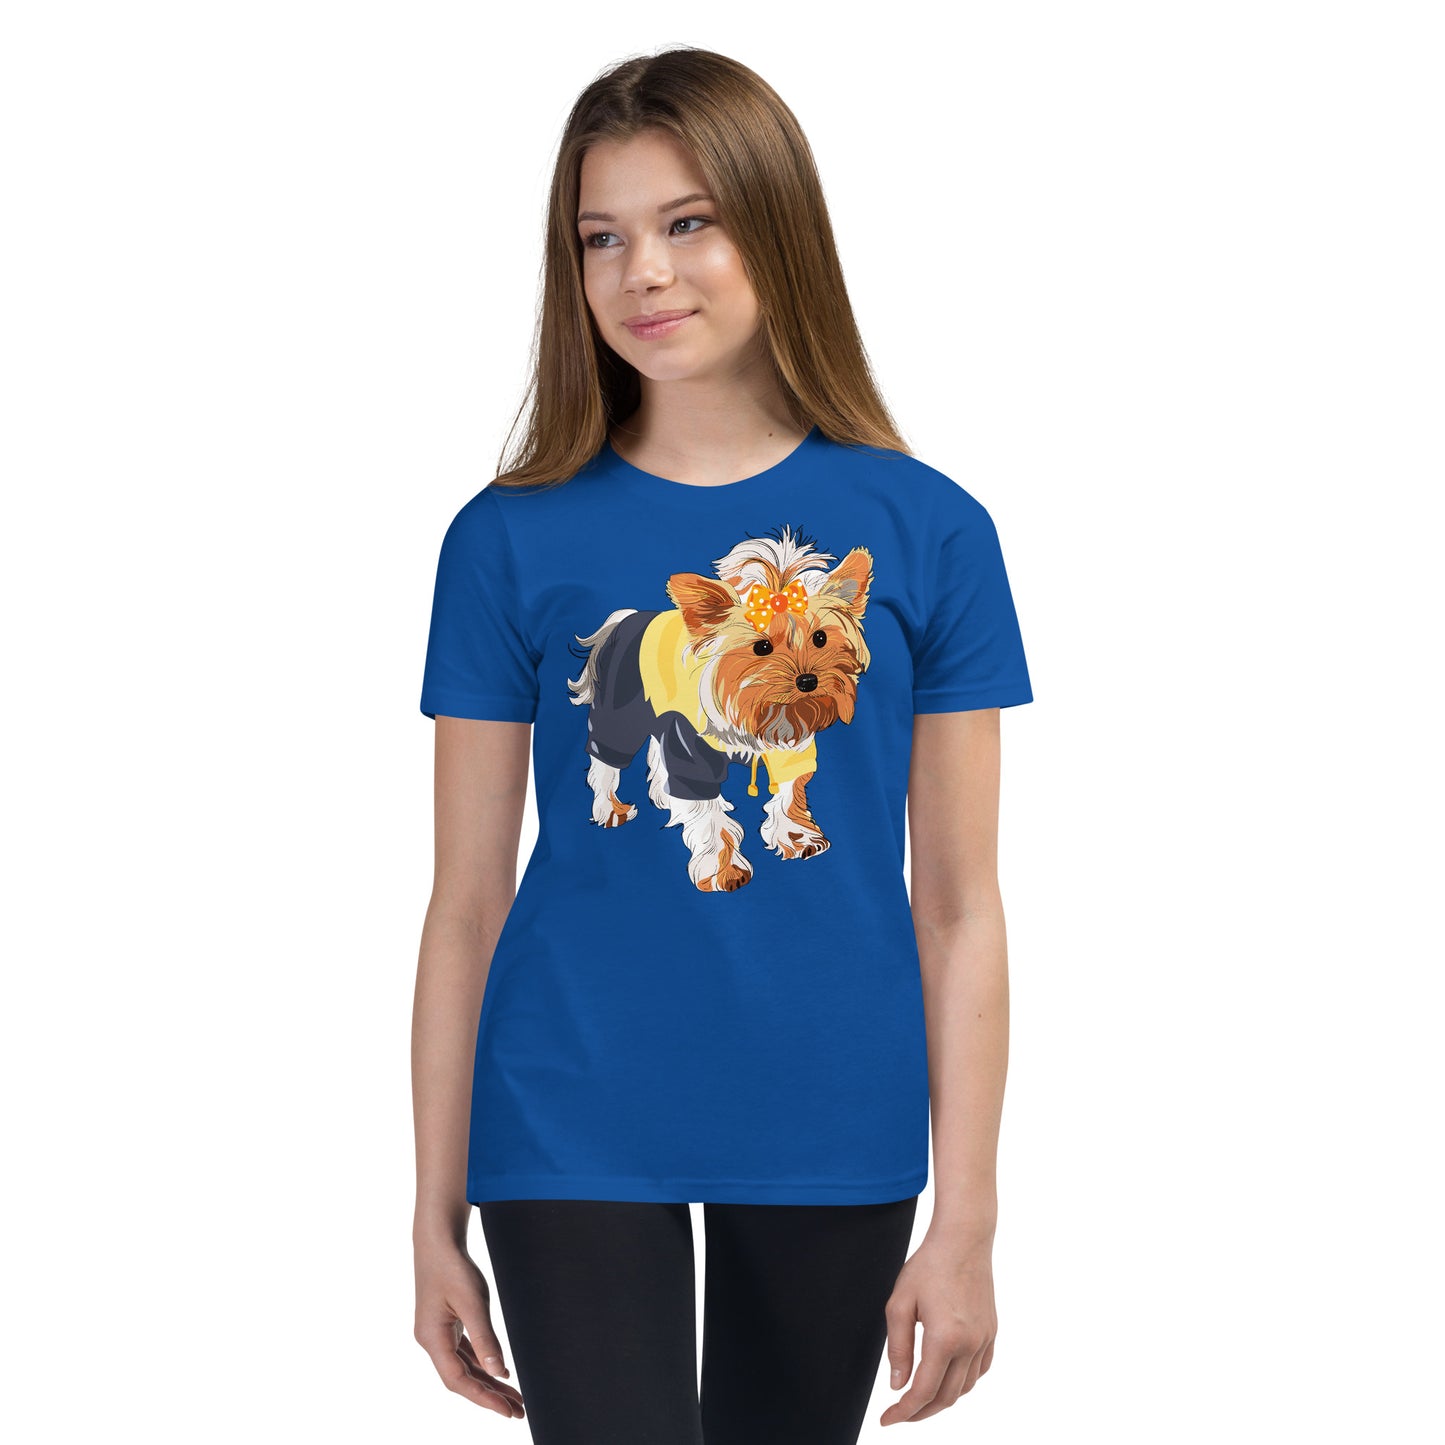 Cute dog wears yellow hair tie T-shirt, No. 0556